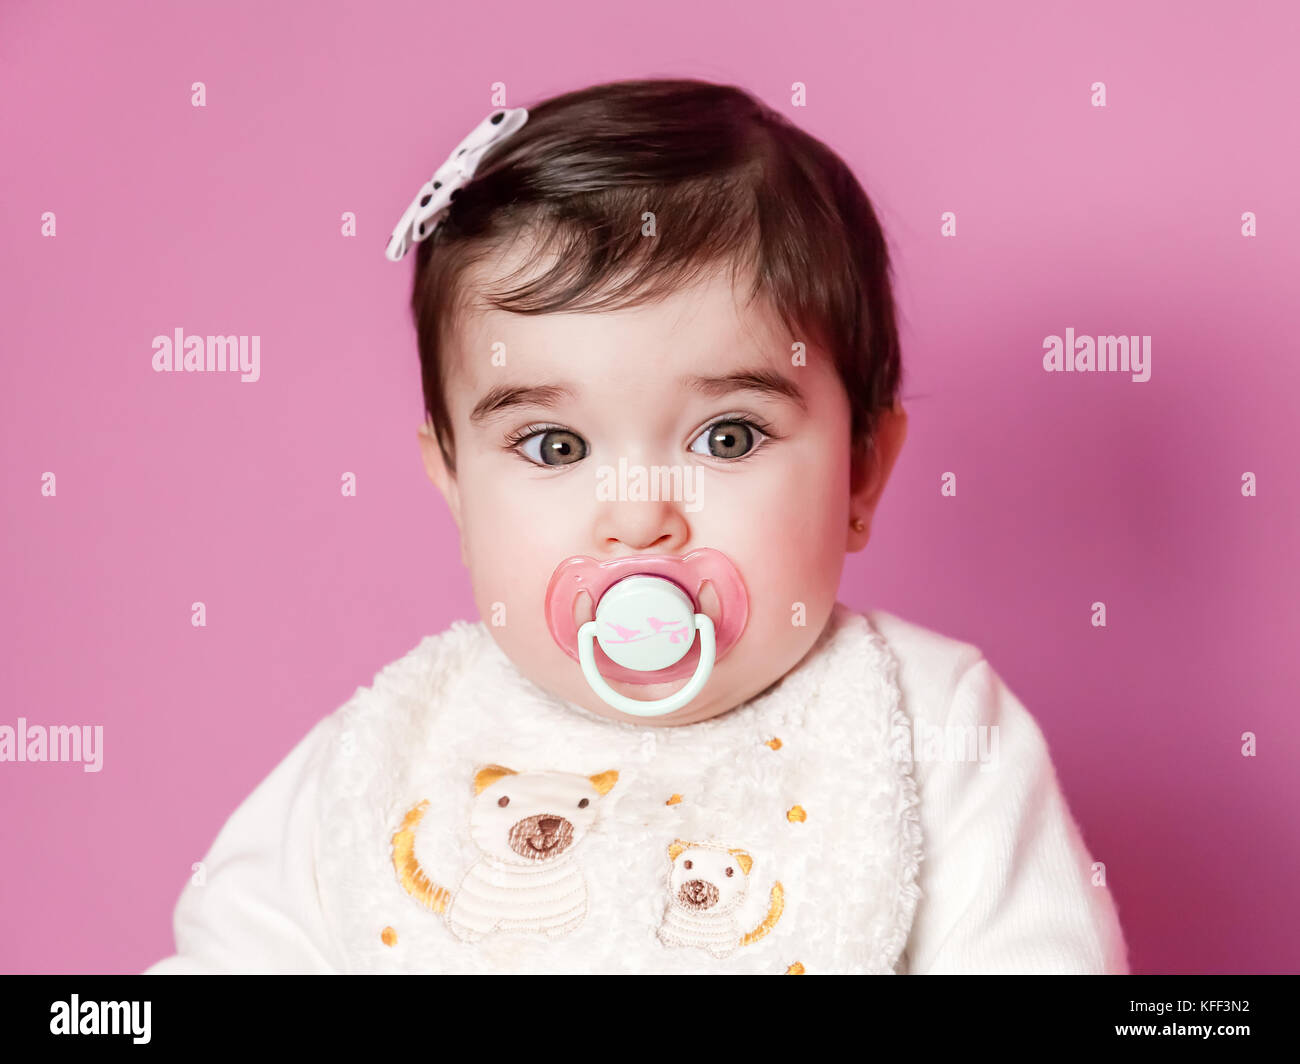 Mignon, joli et happy baby girl portrait avec une sucette rose, mannequin ou sucette, portant un dossard et un arc dans les cheveux. neuf mois / mannequin bébé fille Banque D'Images